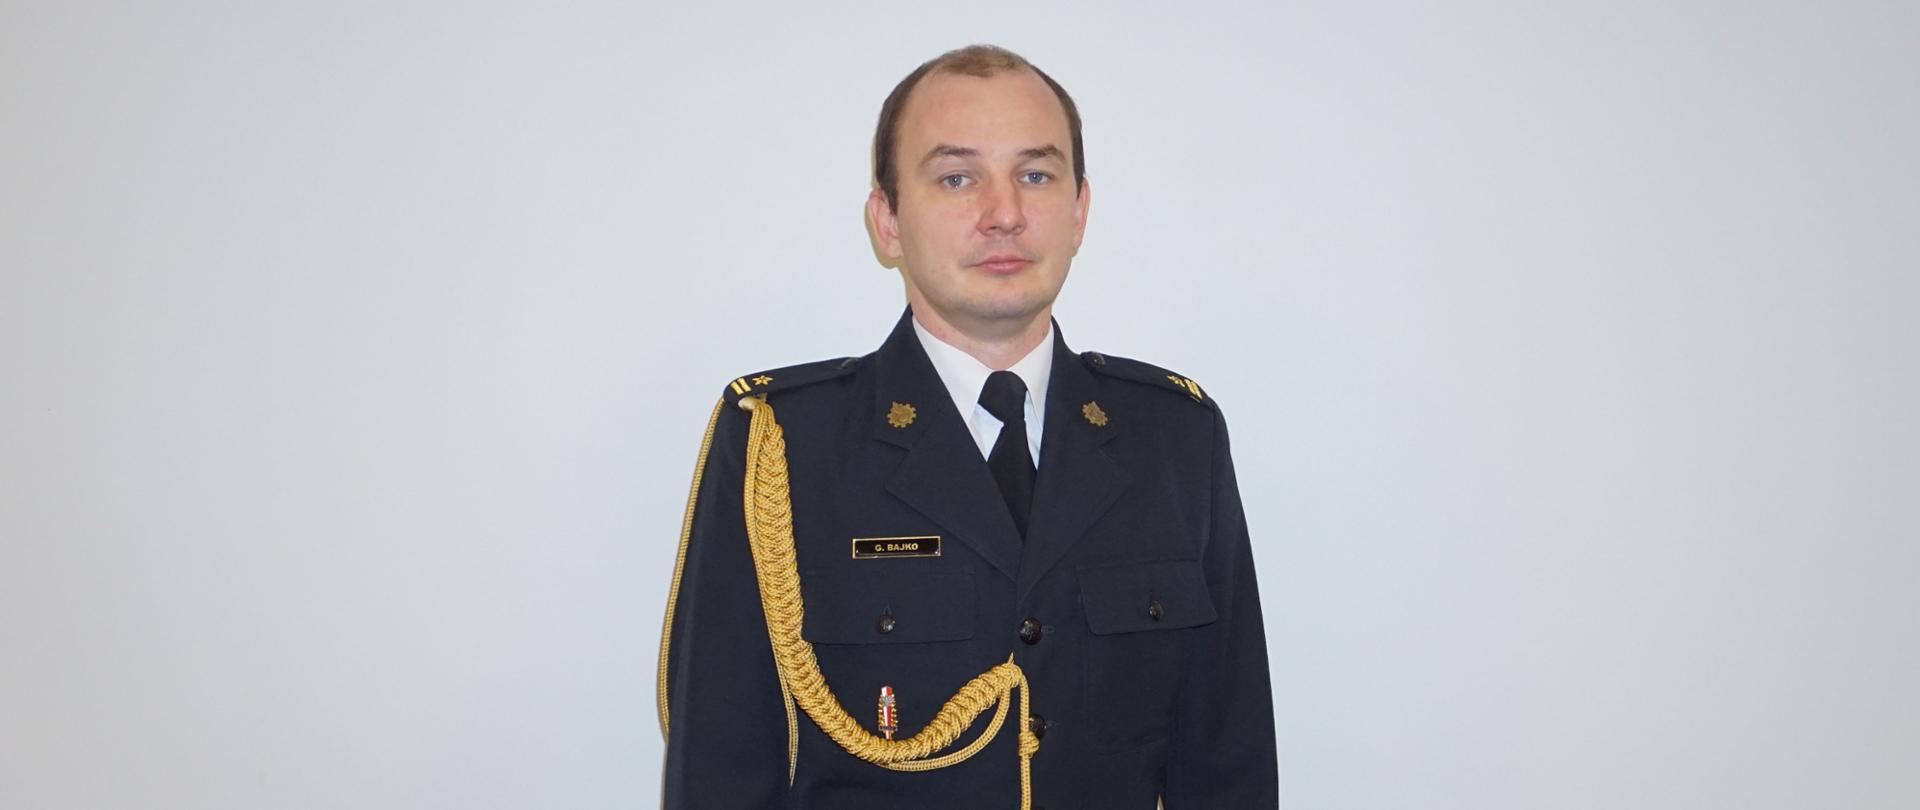 Zastępca Komendanta Powiatowego mł. bryg. Grzegorz Bajko w granatowym mundurze na białym tle.